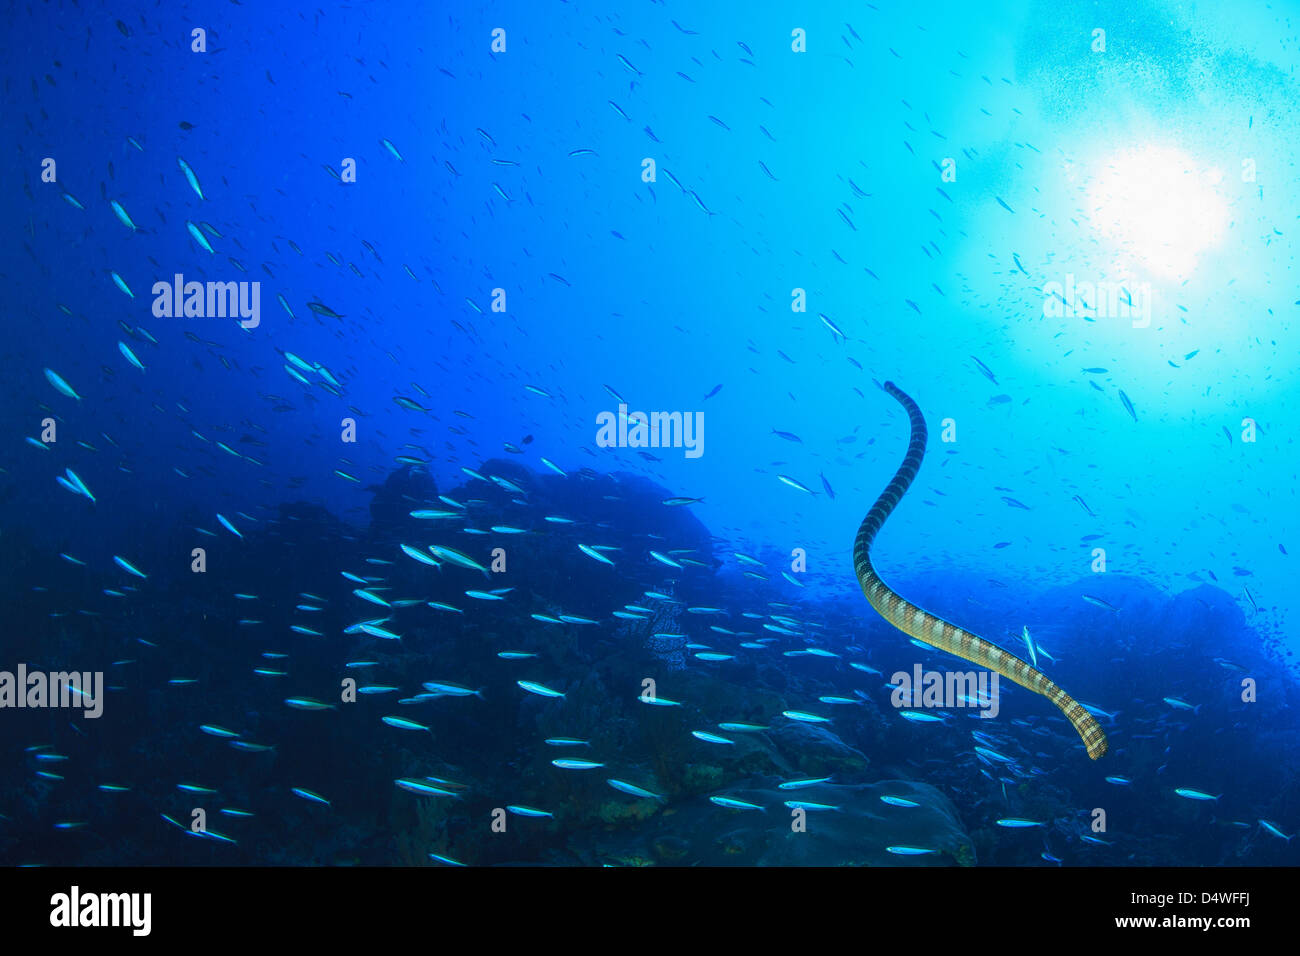 Eel swimming in school of fish Stock Photo